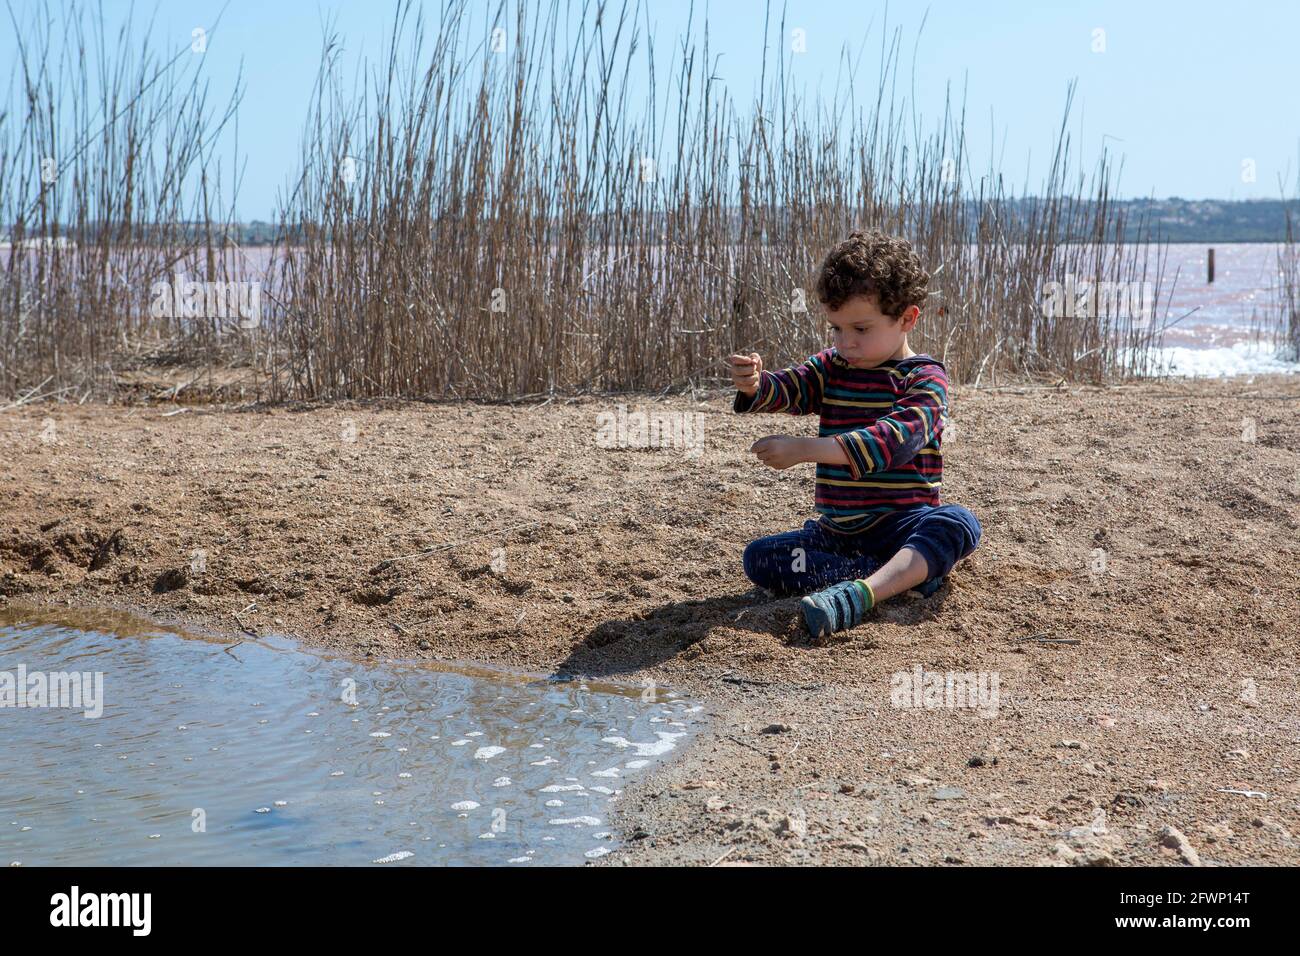 Niño pequeño de 4-5 años caucásico con pelo rizado, jugando con arena en el borde del estanque en el día soleado con camisa de rayas de color Foto de stock